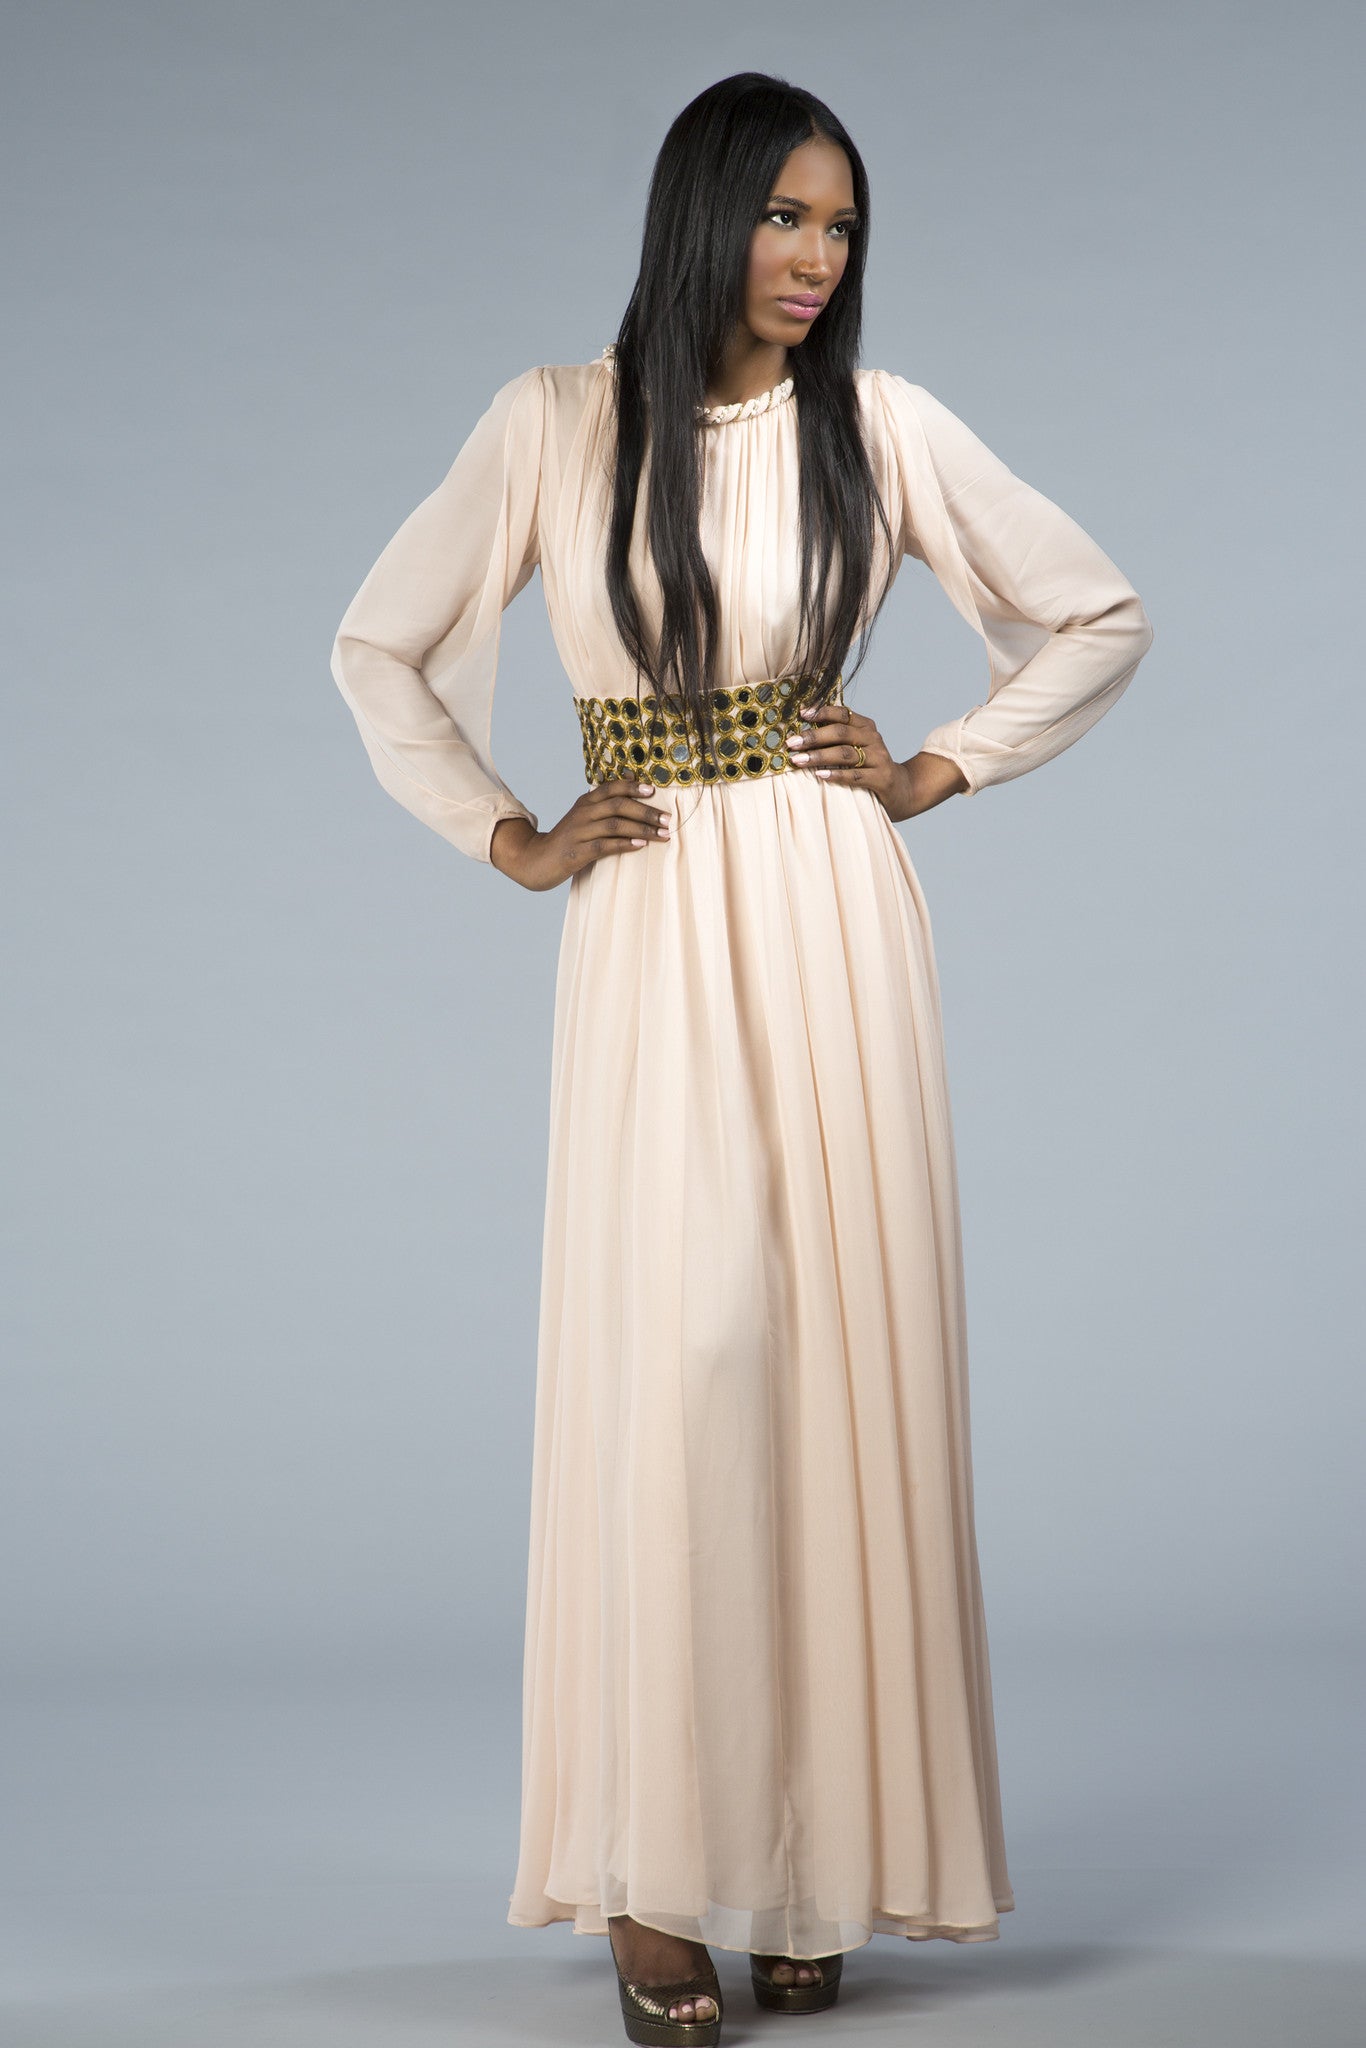 The Noor gown